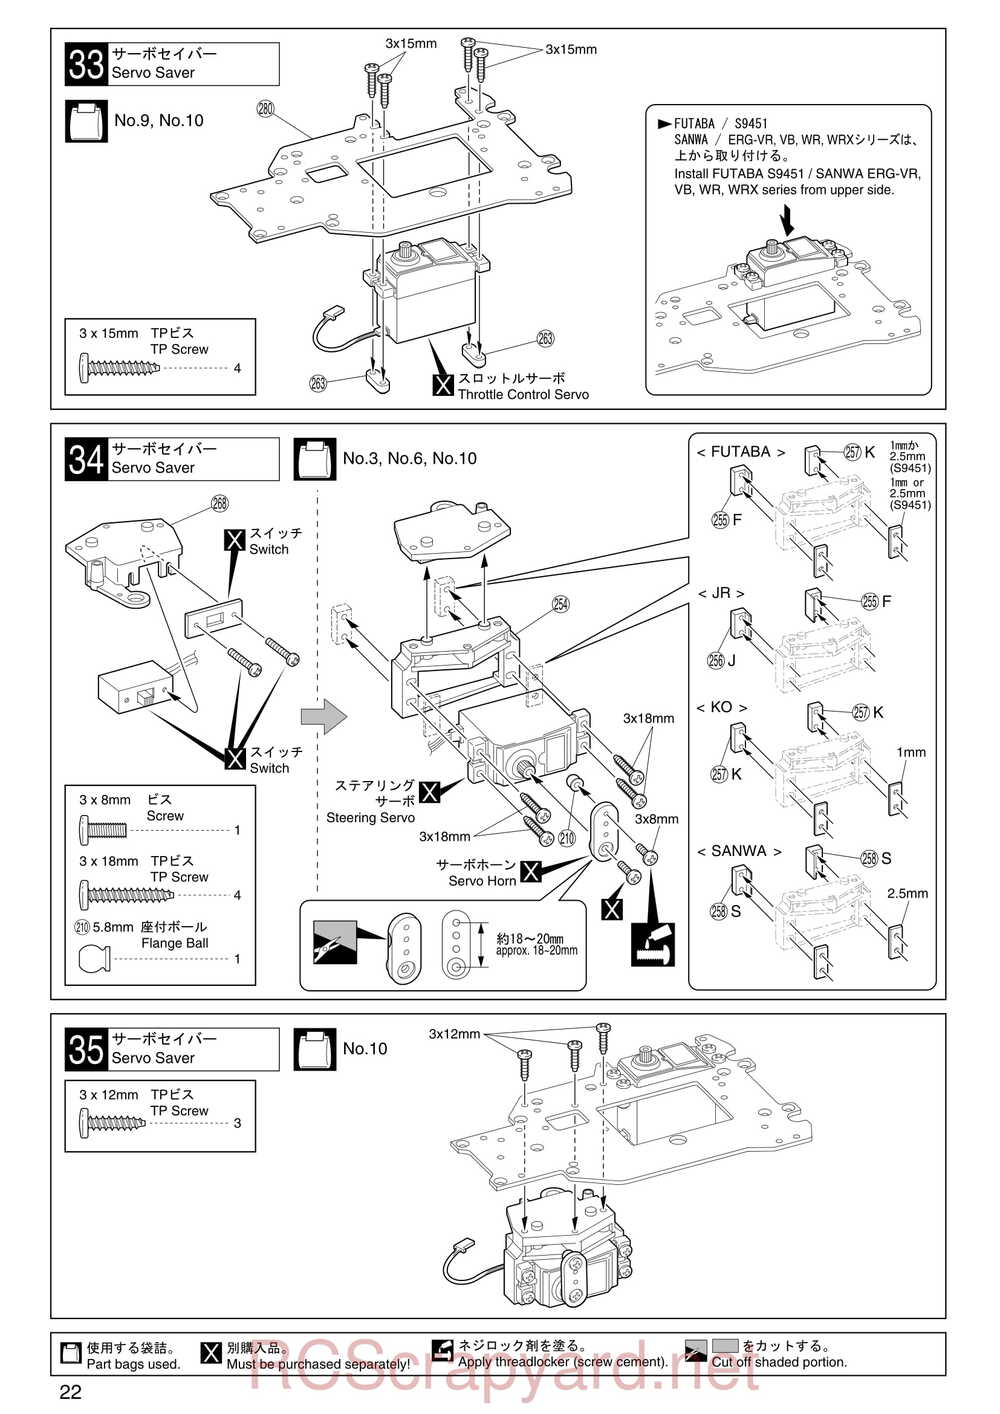 Kyosho - 31255 - V-One RR Evolution - Manual - Page 22